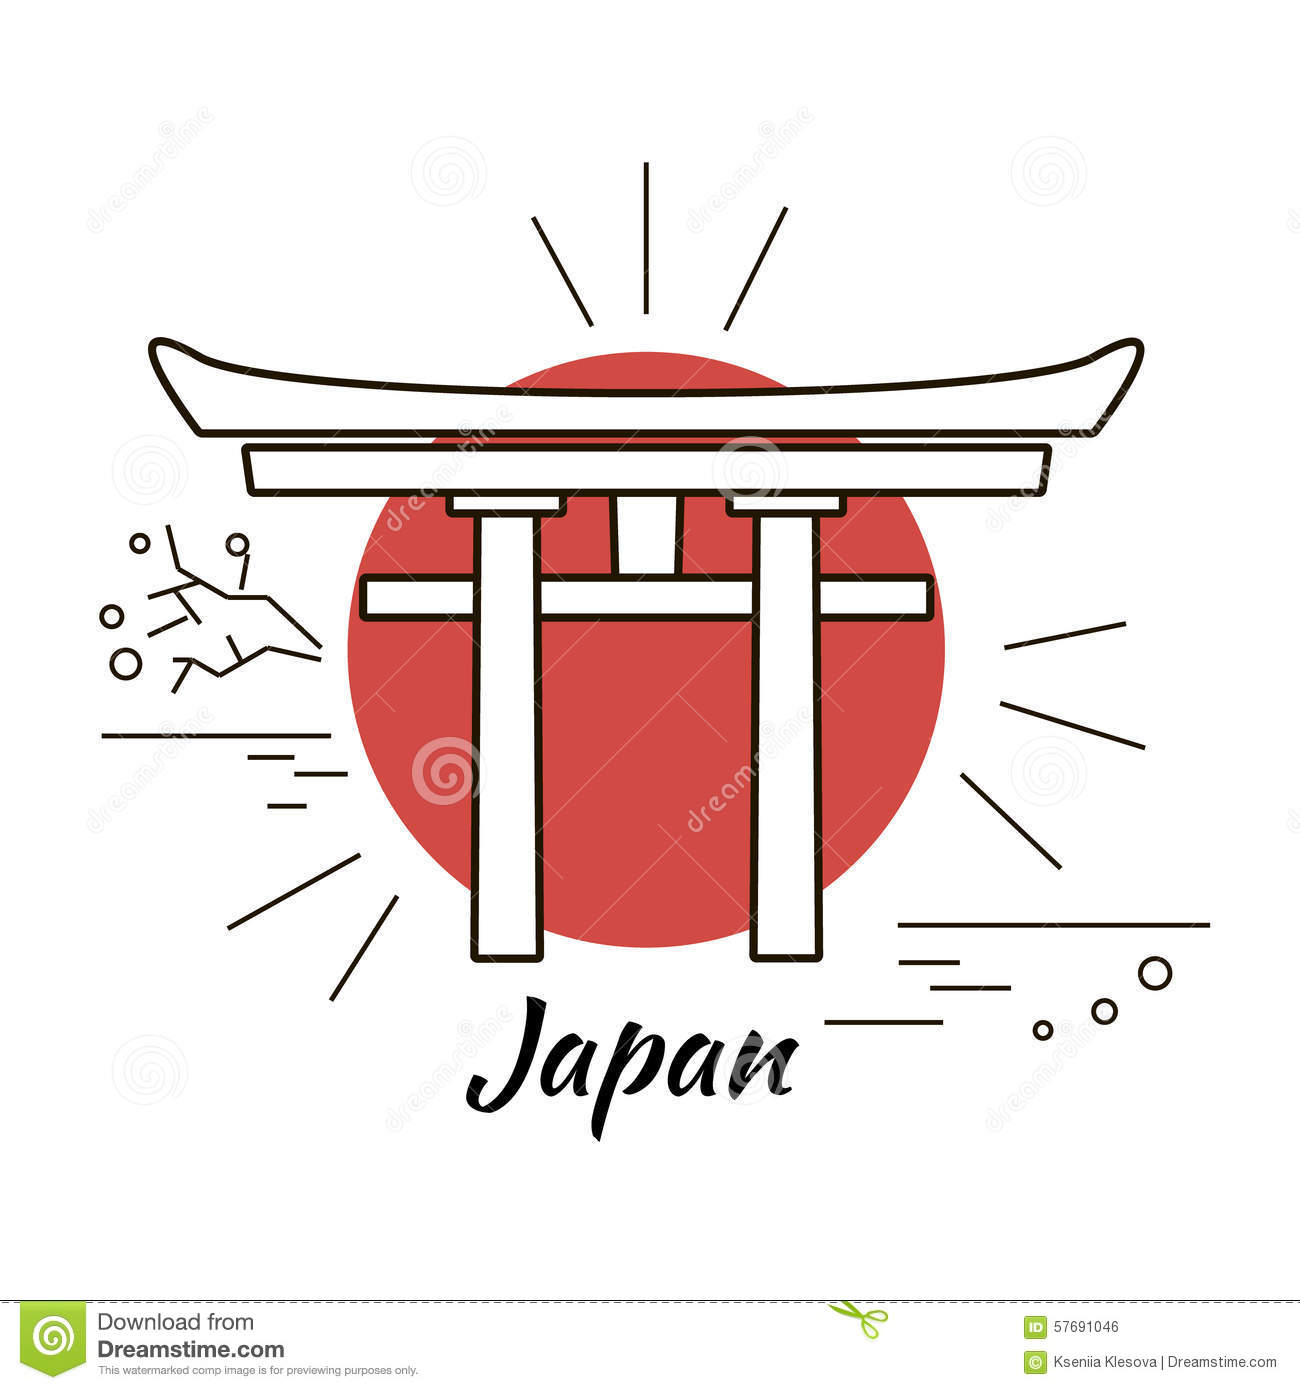 Japan Logos
